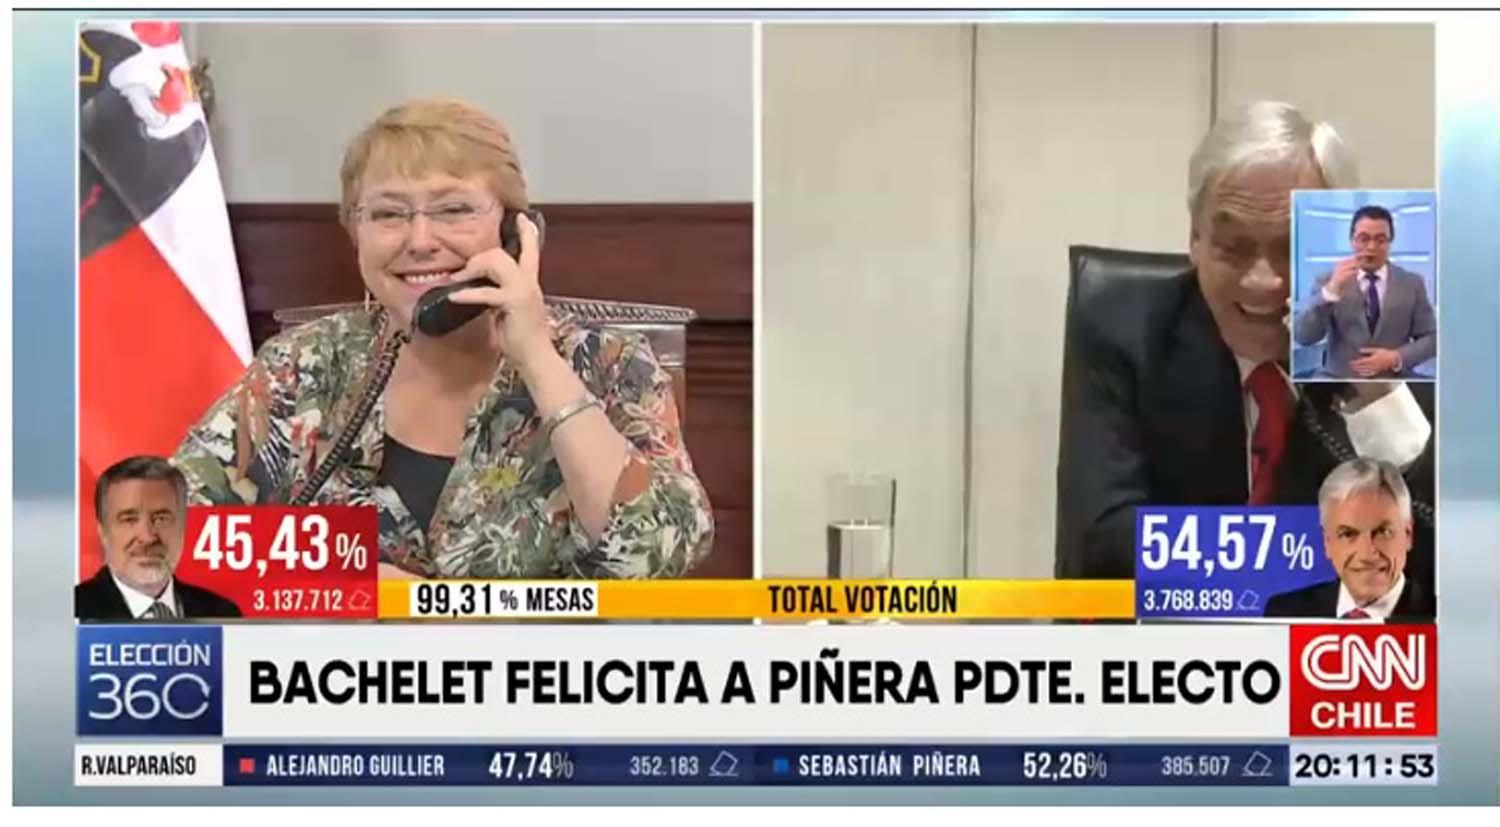 Piñera a Bachelet: espero recibir sus consejos desde su experiencia y su sabiduría